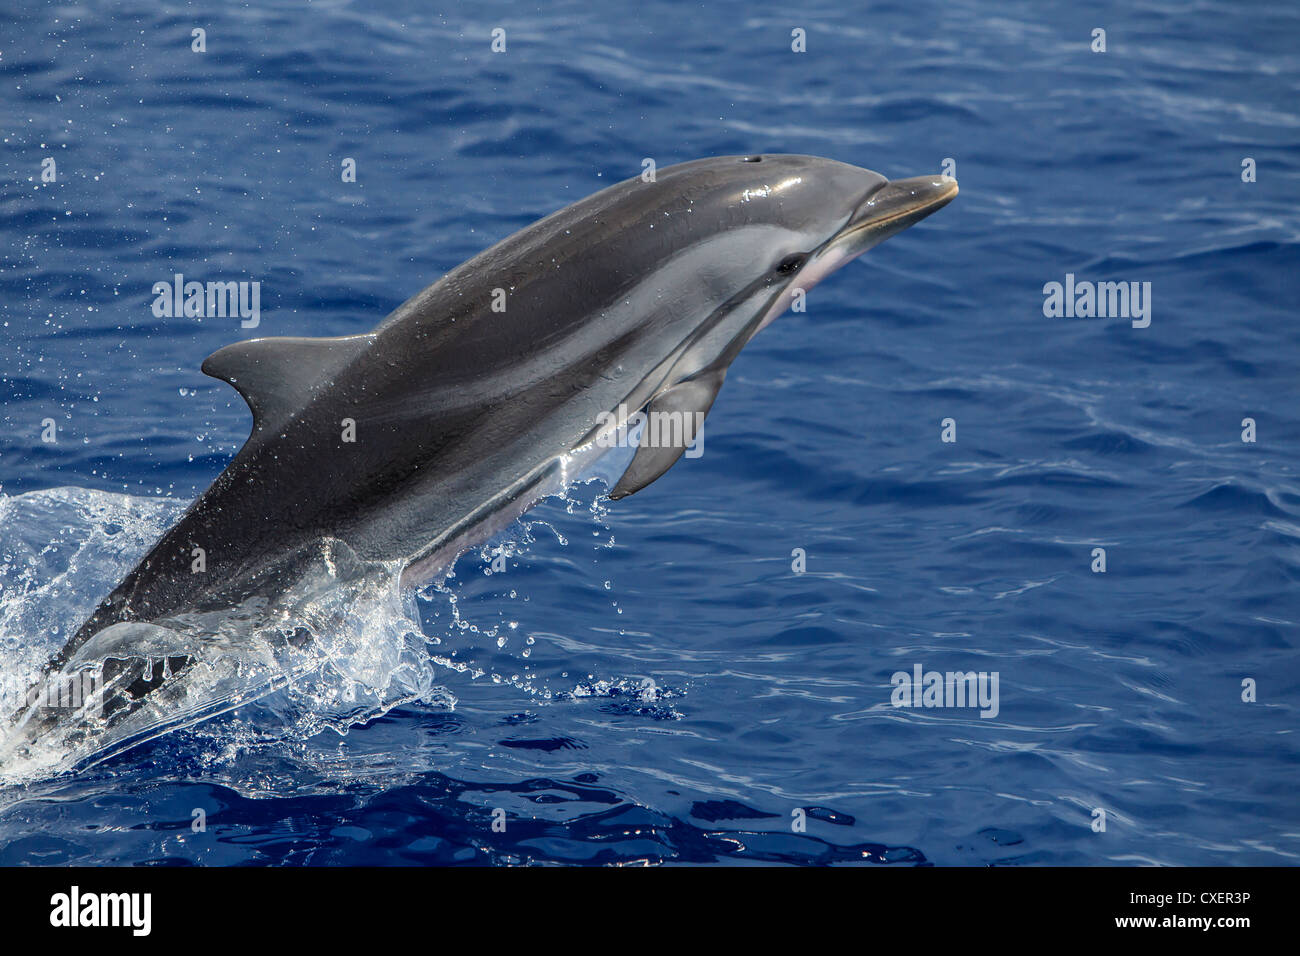 Striped Dolphin, Blau-Weißer Delfin, Stenella coeruleoalba, selvatici, saltando Maldive Oceano Indiano Foto Stock